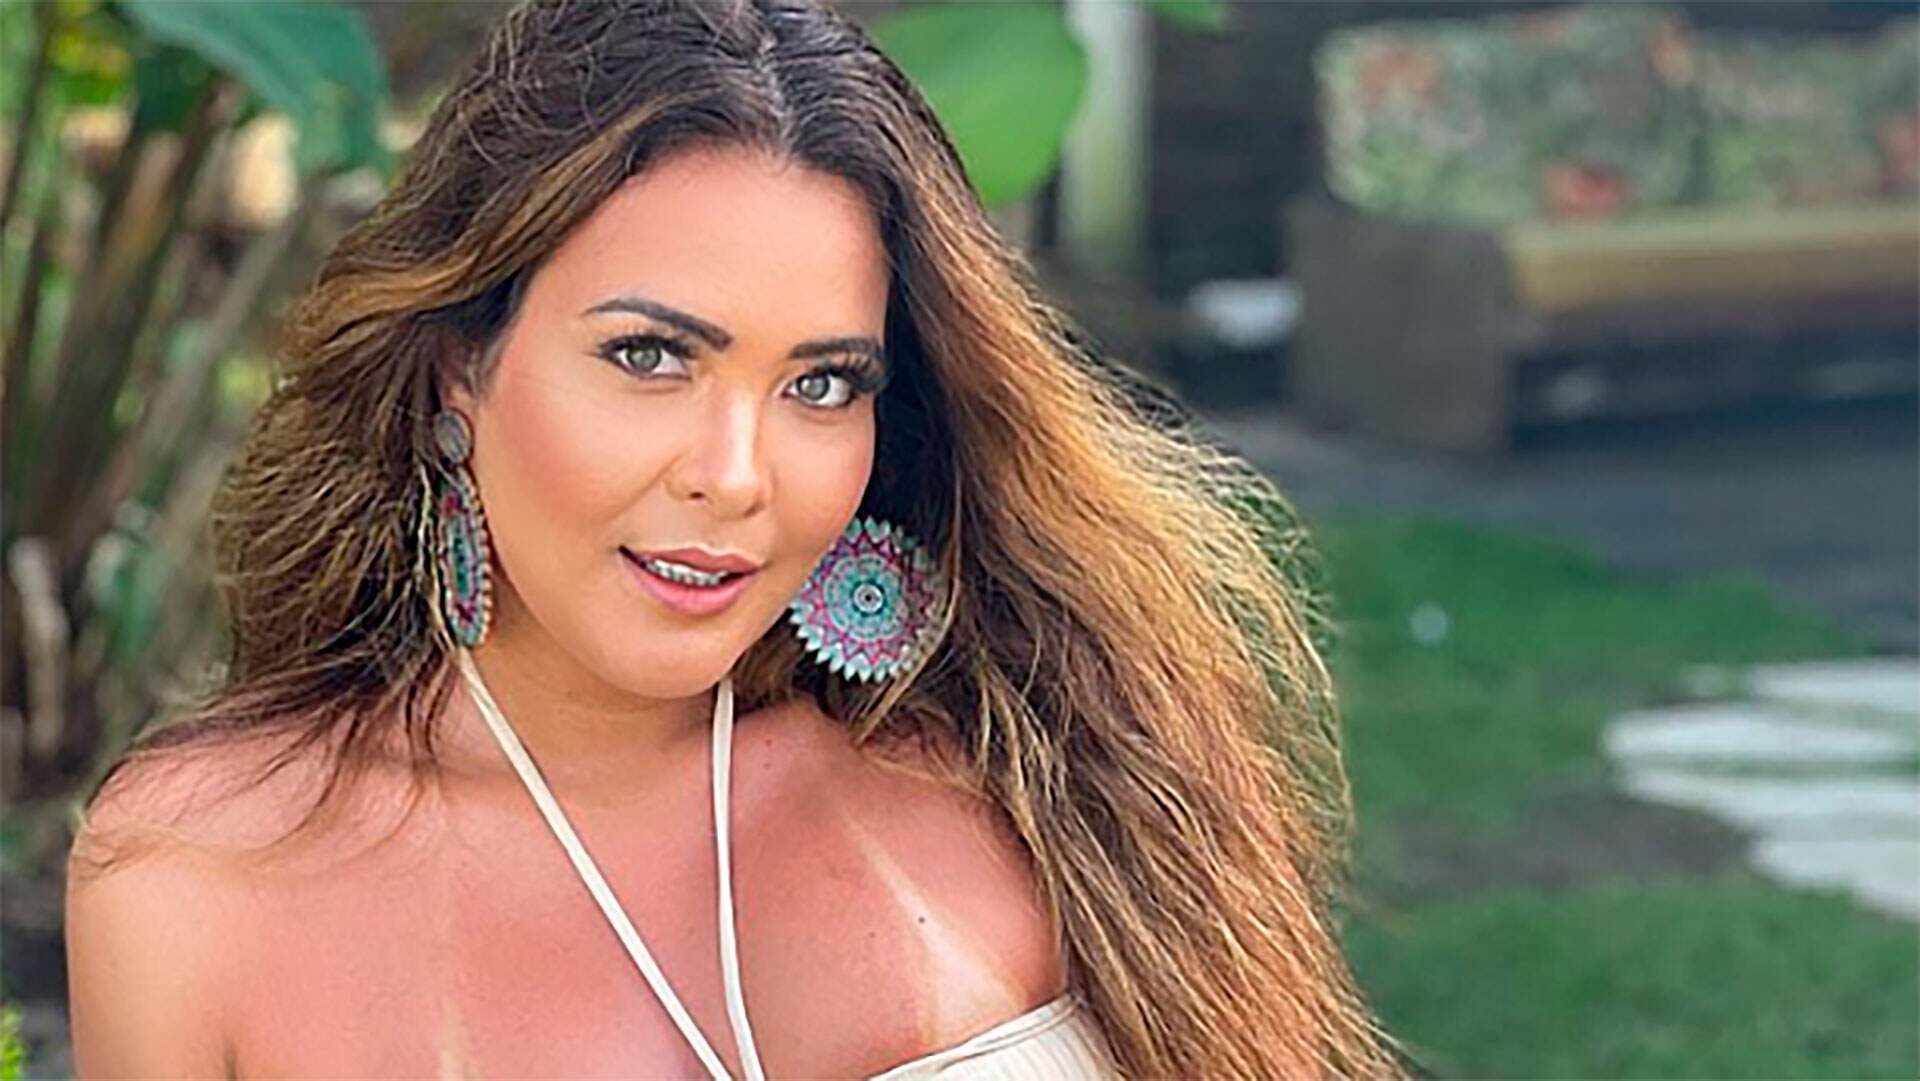 Geisy Arruda exibe o seu look para se jogar na ‘revoada’ e detalhe choca a web - Metropolitana FM